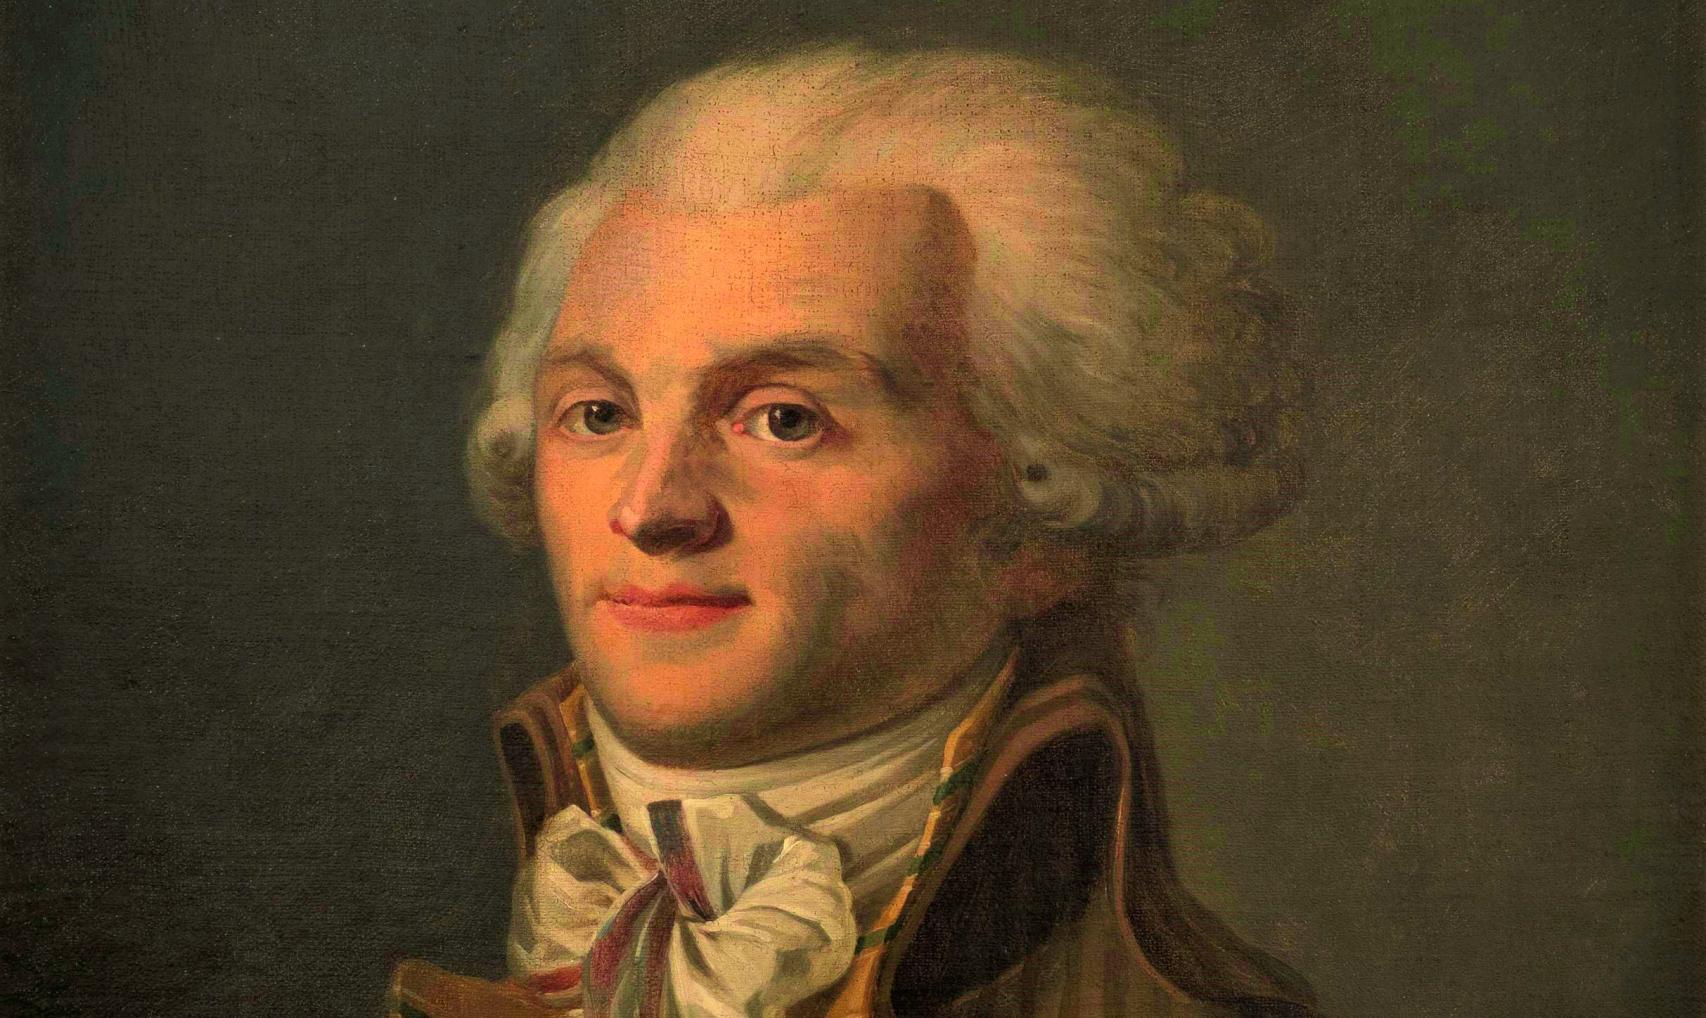 Retrato de Robespierre.